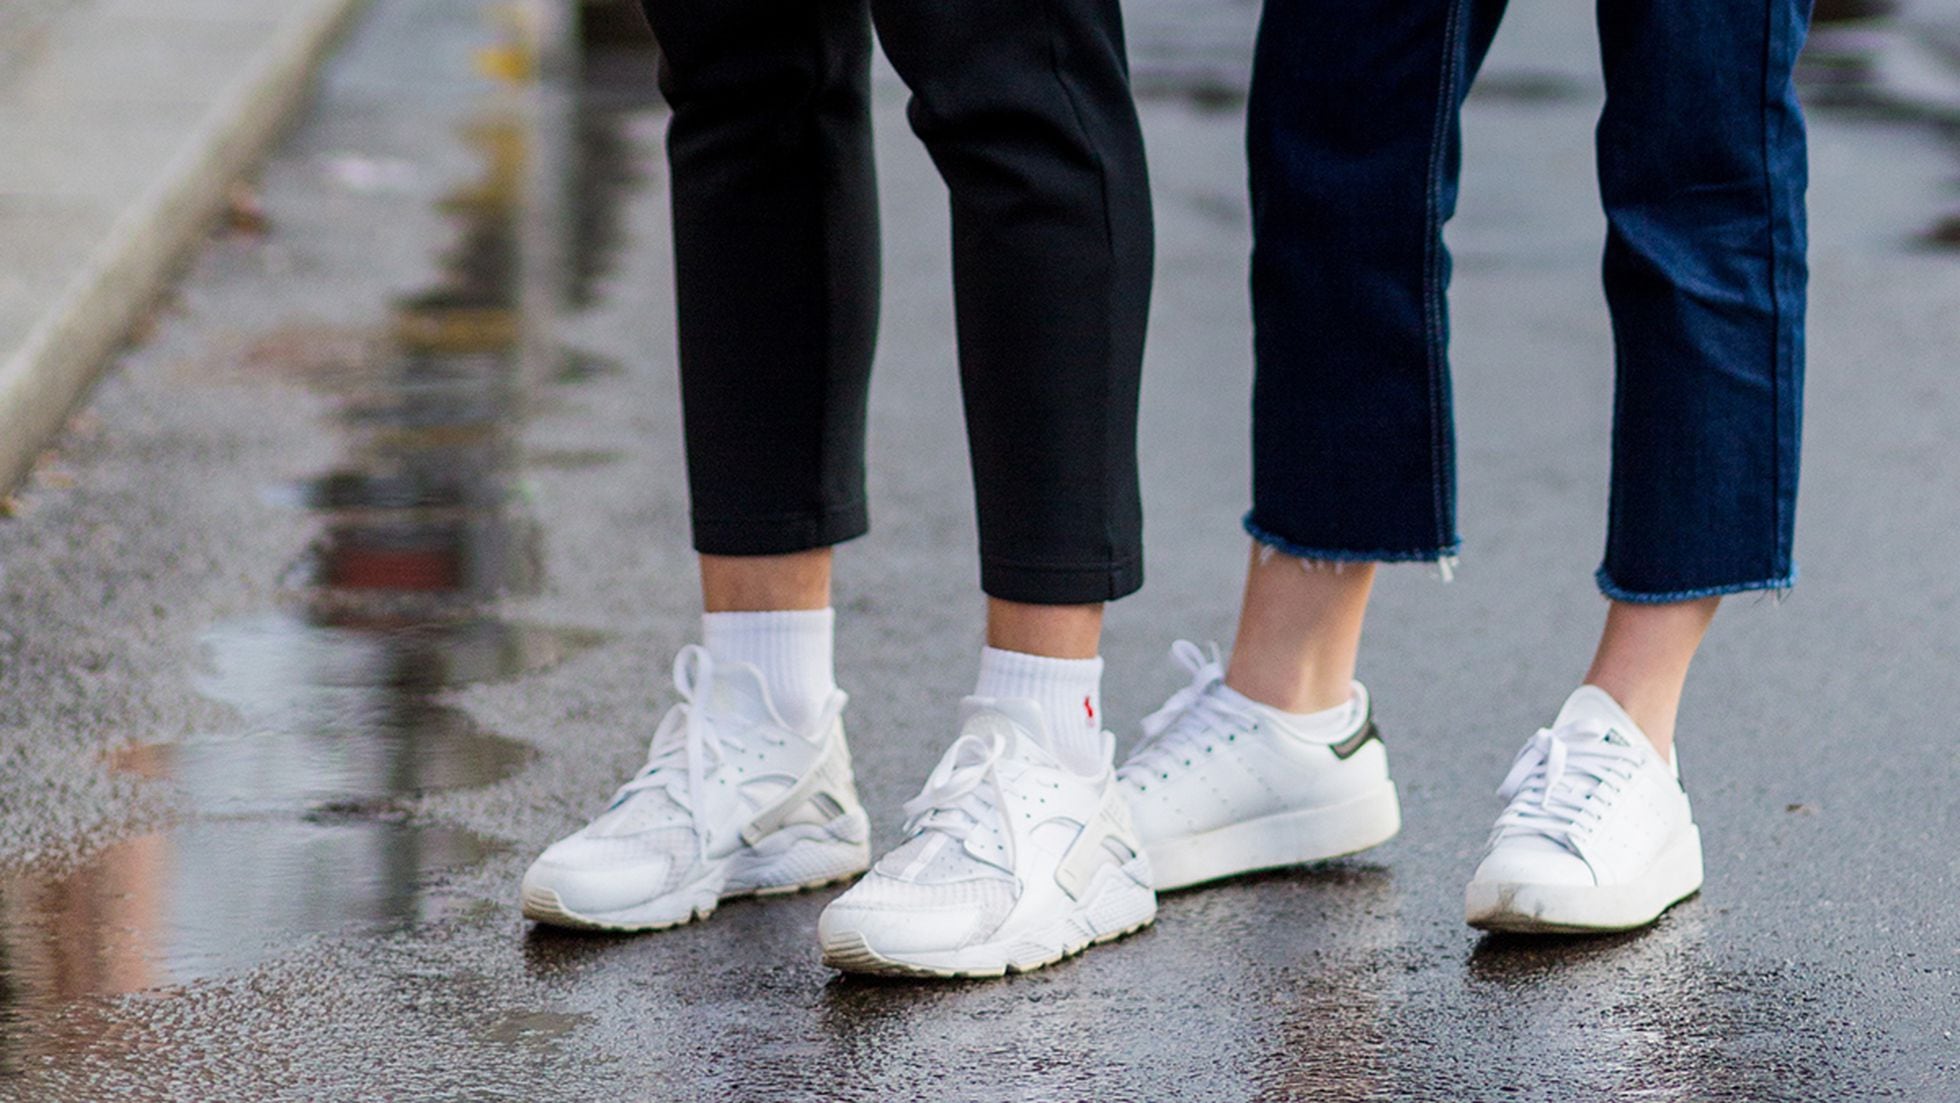 Tareas del hogar va a decidir electrodo Converse, Vans o Nike: diez zapatillas para él o ella, que marcan estilo,  rebajadas hasta un 50% | Escaparate: compras y ofertas | EL PAÍS